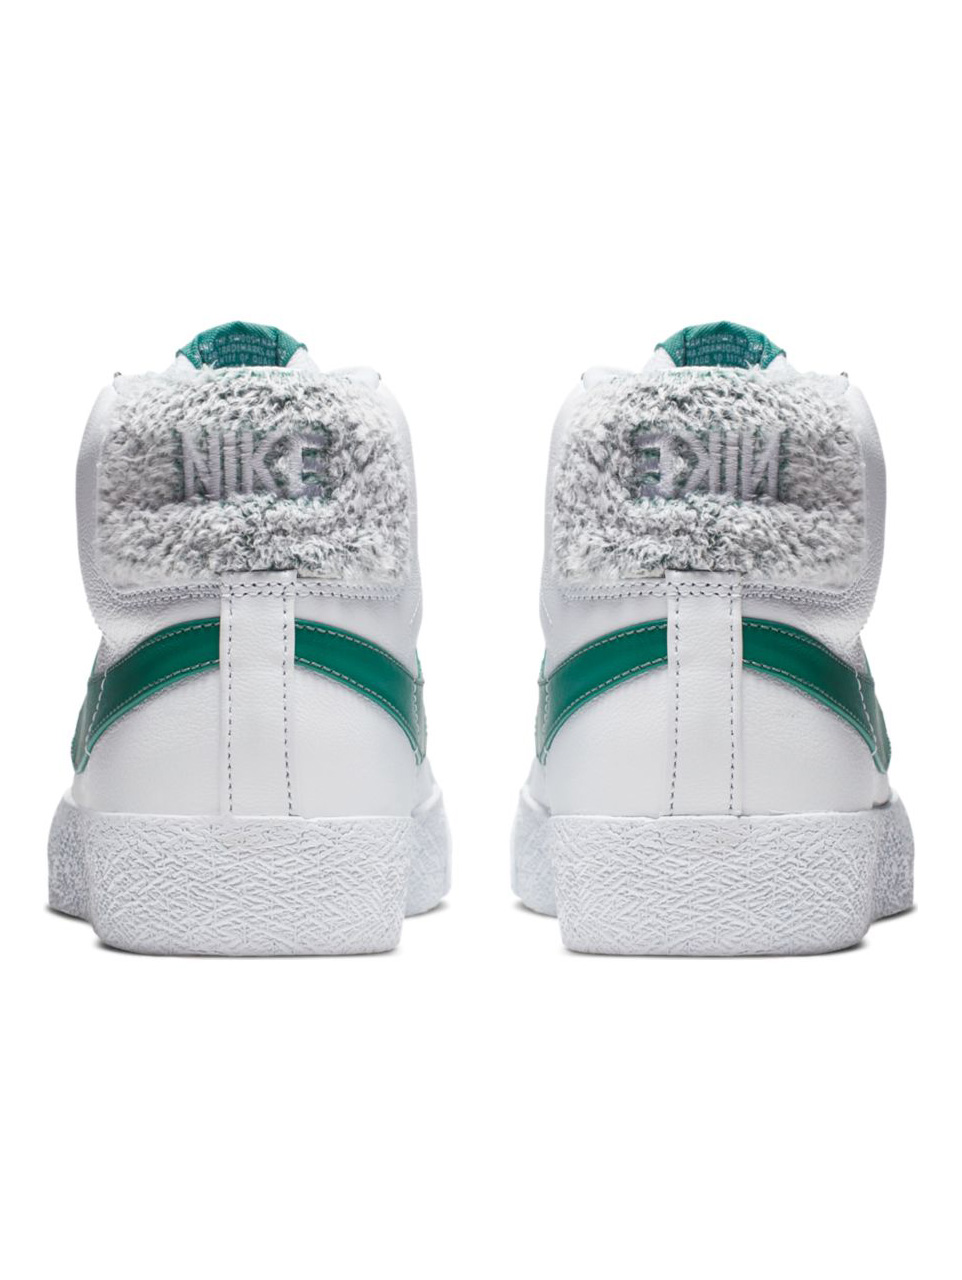 Nike SB Blazer Mid - White / Bicoastal 